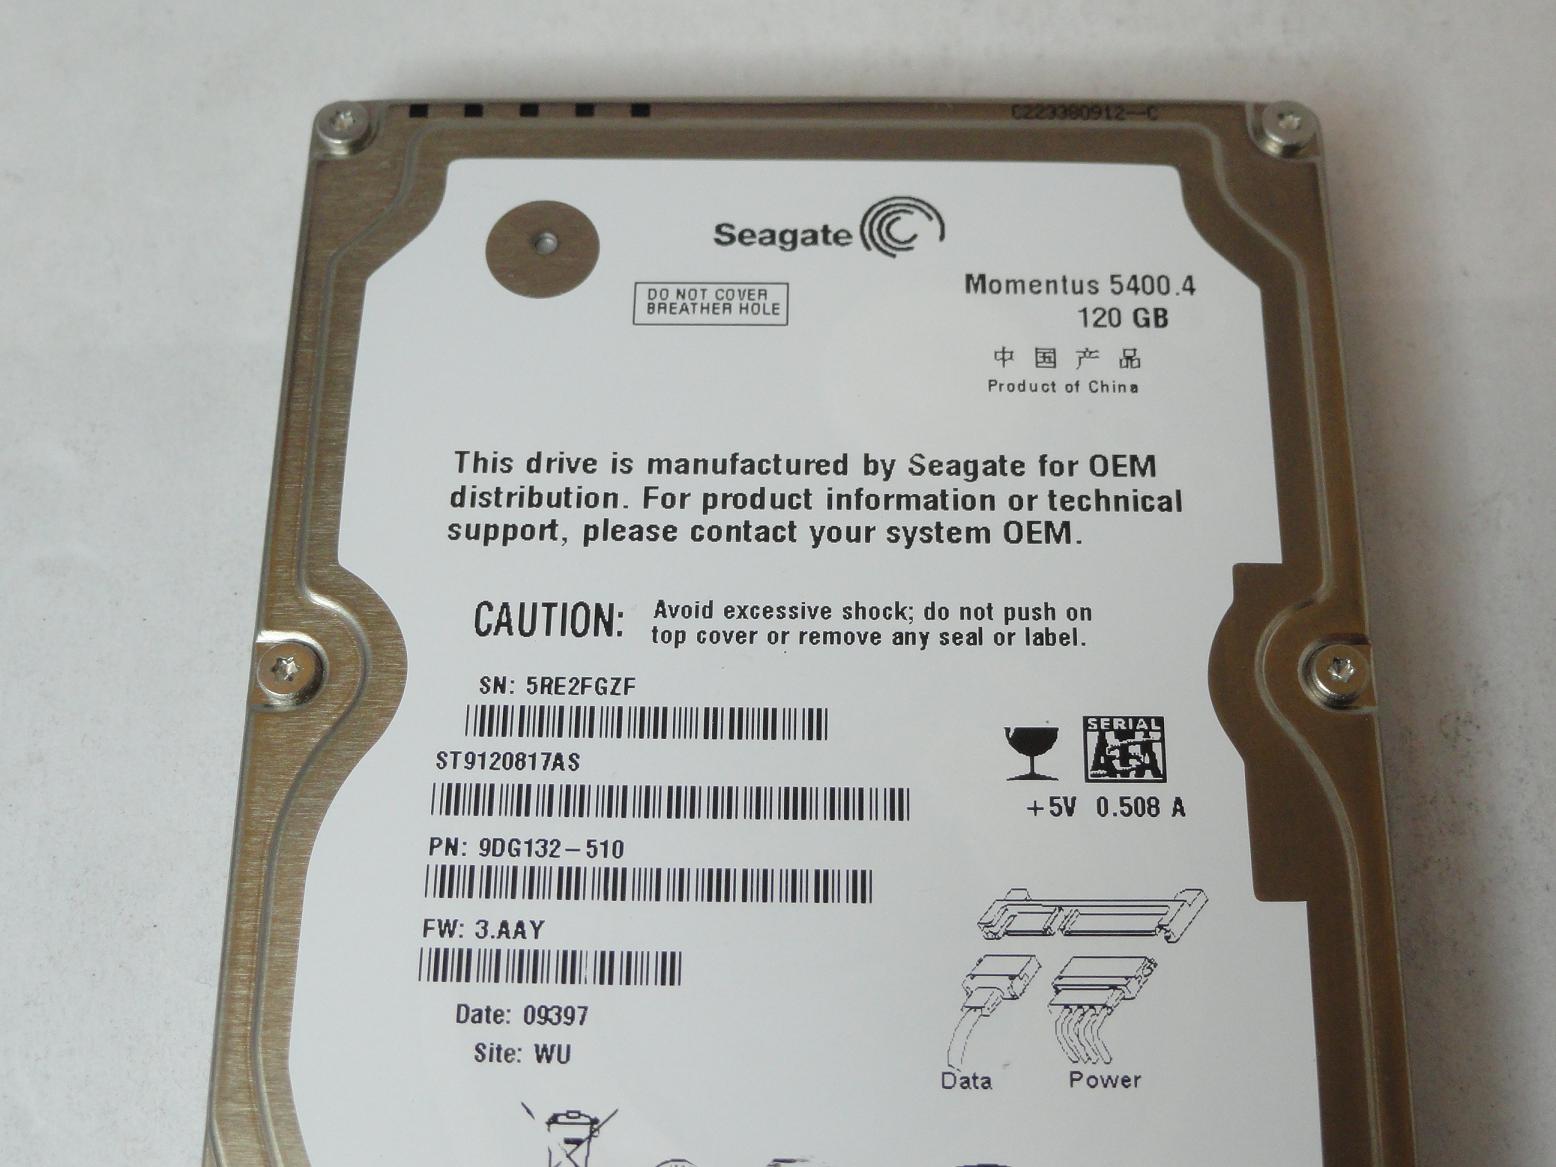 PR23246_9DG132-510_Seagate 120Gb SATA 5400rpm 2.5in HDD - Image3